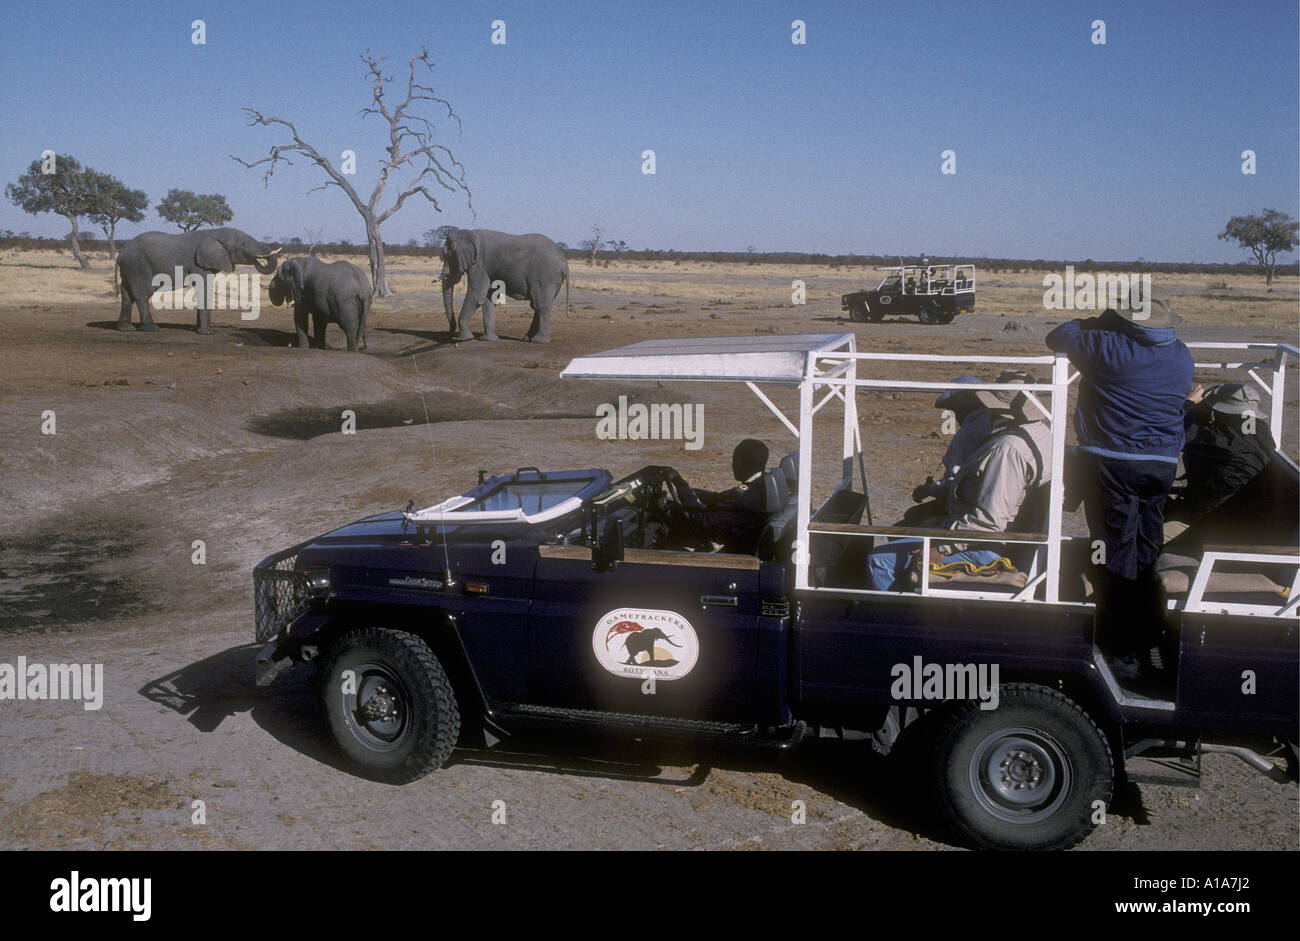 Photographier les clients et l'affichage d'un LANDROVER éléphants près de Savuti Camp des éléphants du Sud Afrique du Sud Botswana Banque D'Images